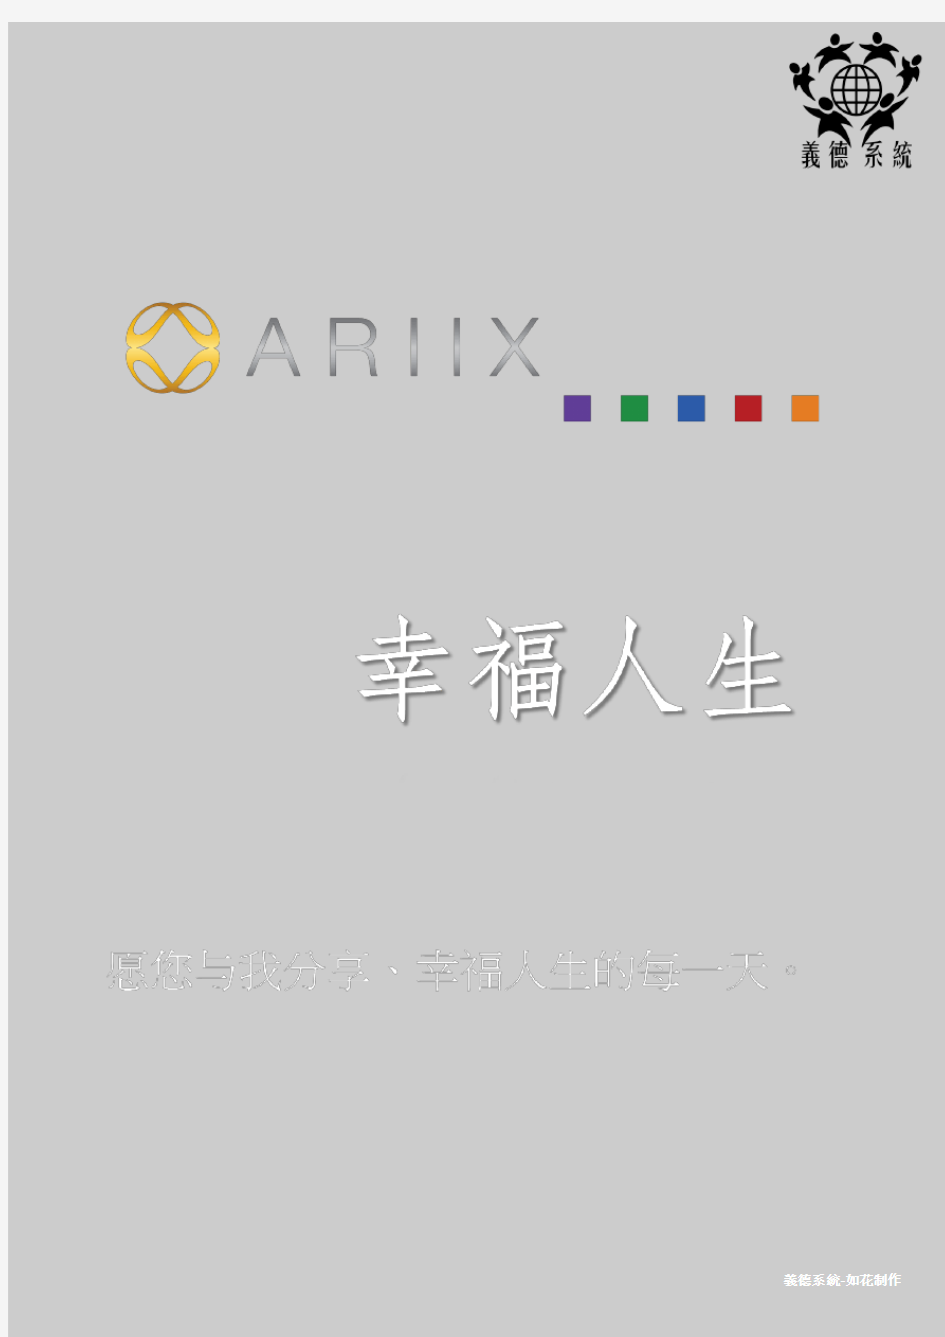 ARIIX爱睿希产品详细资料对比公司简介及流程各种资料集合